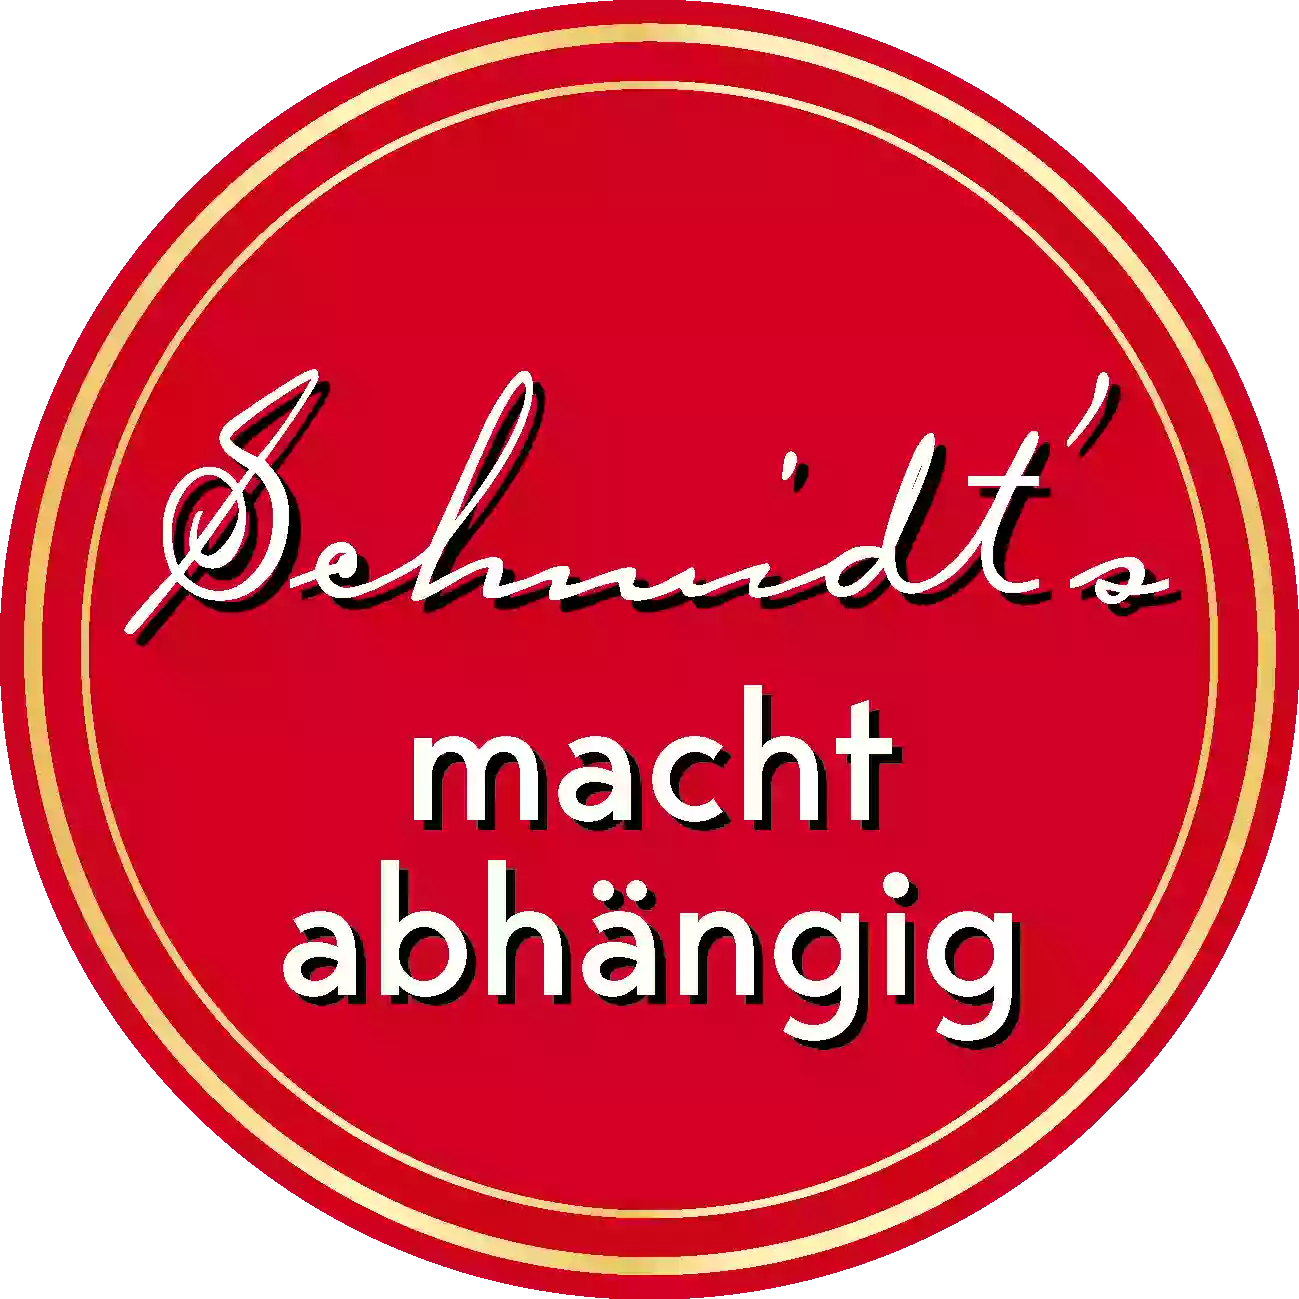 Schmidt's Restaurant & Catering